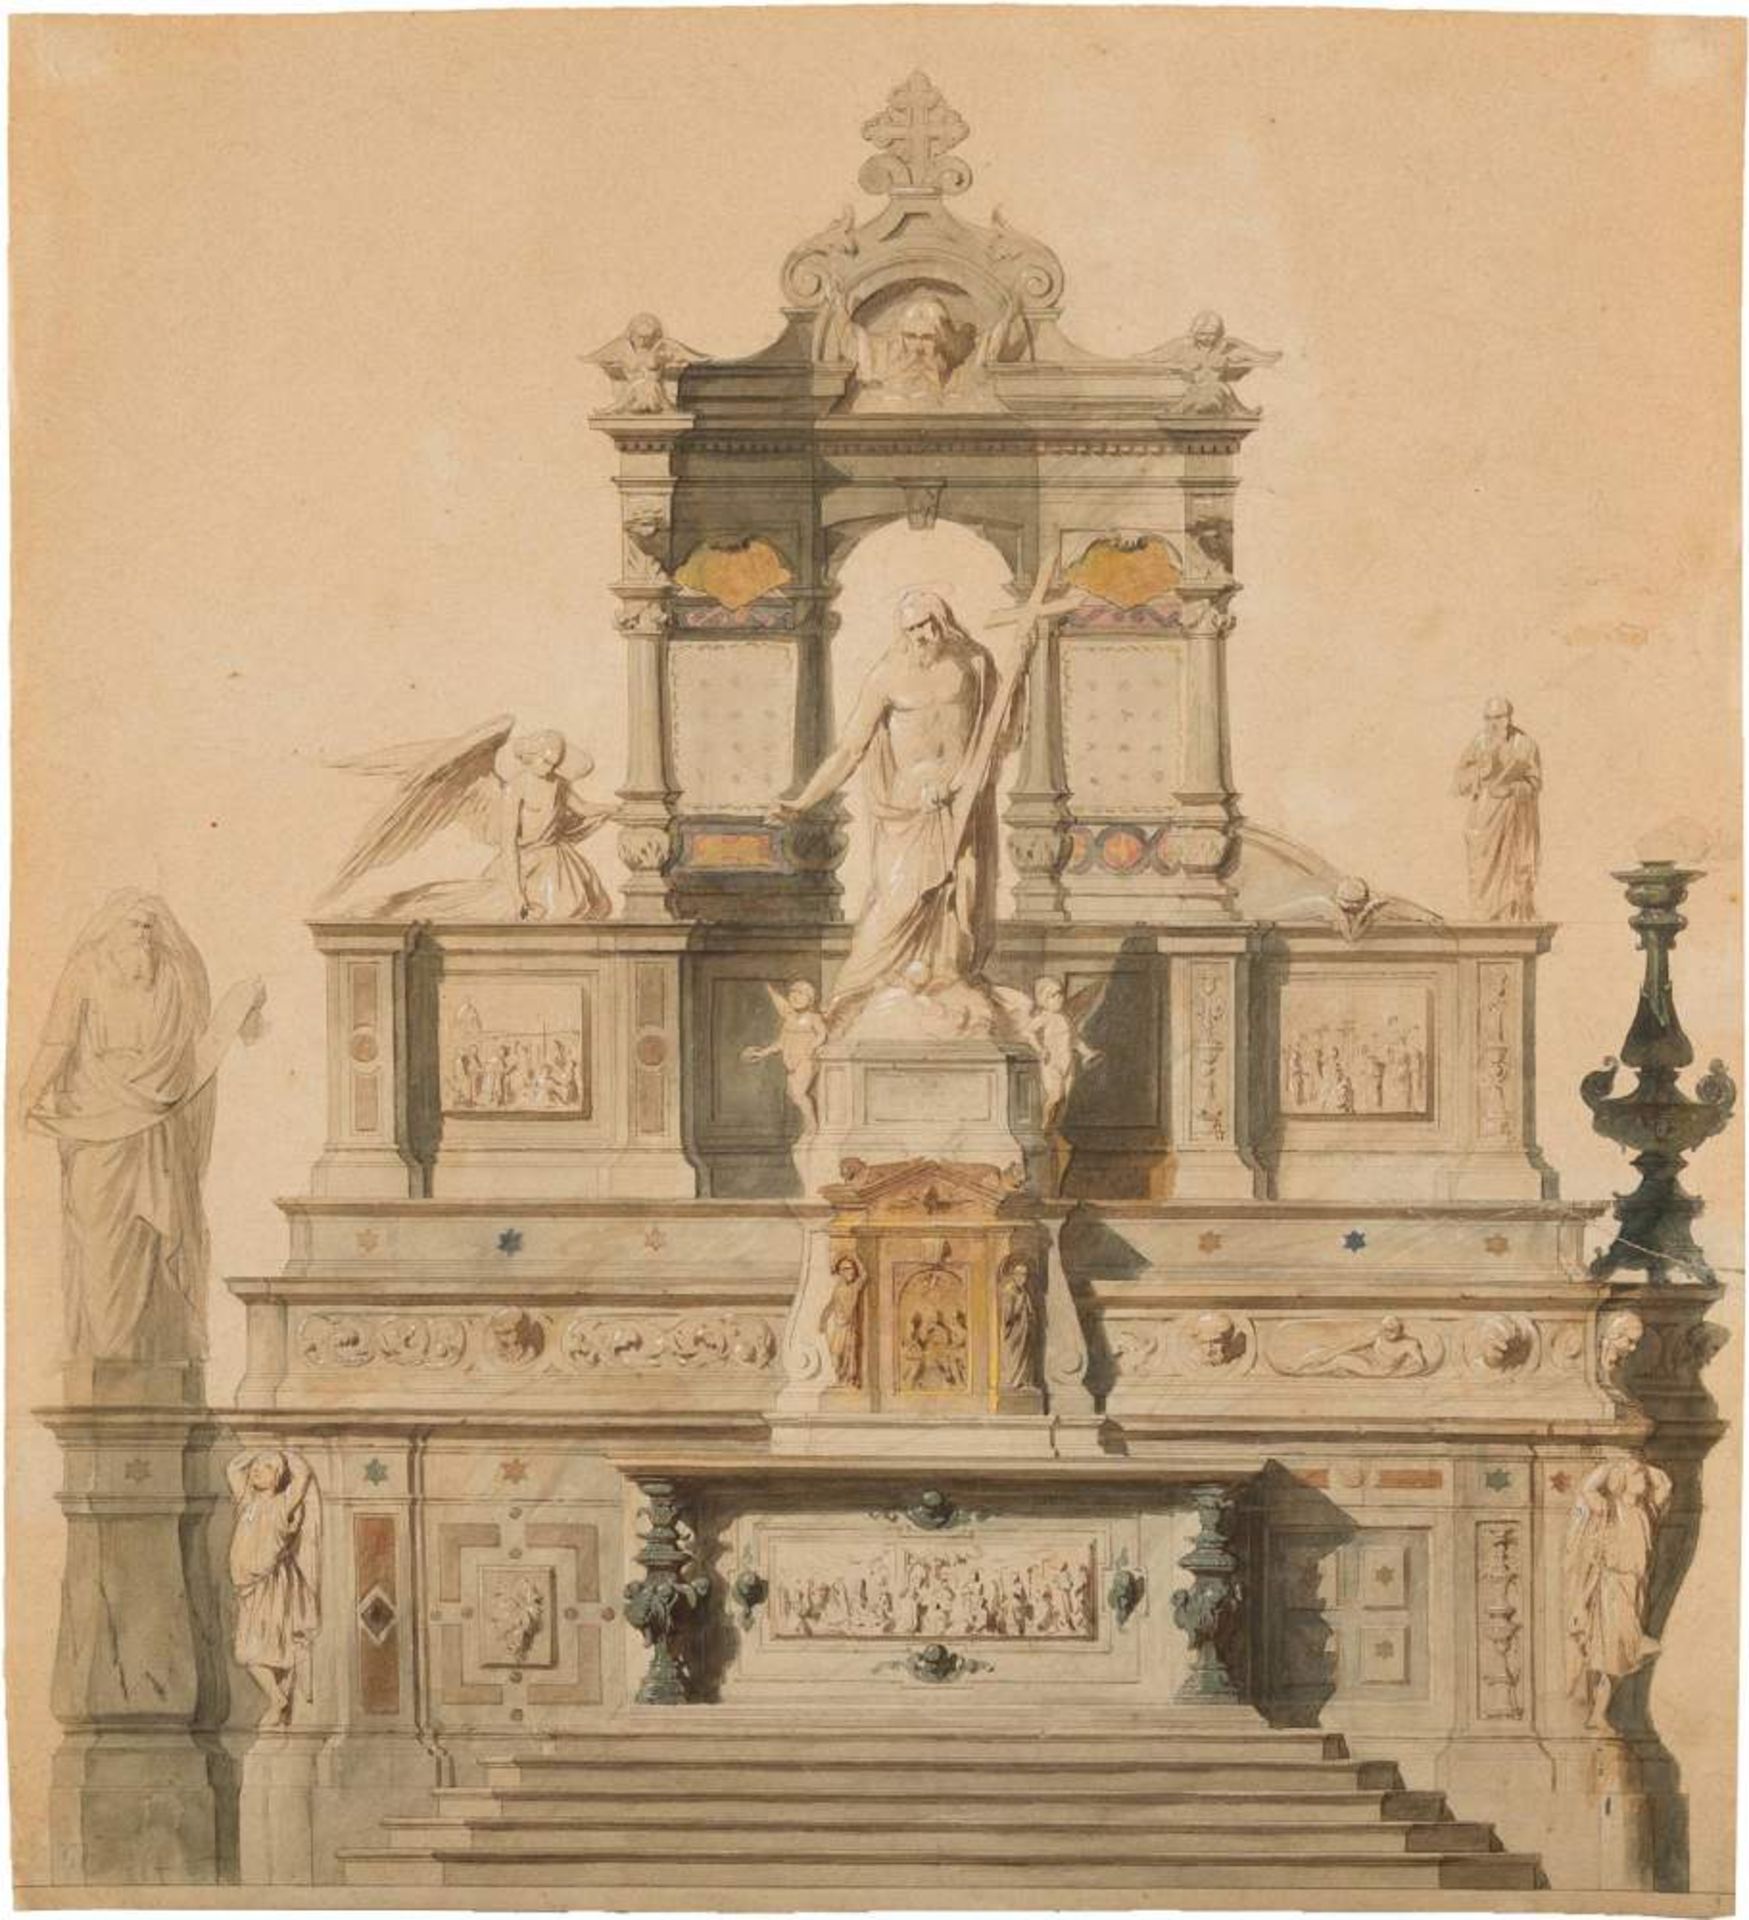 RUDOLF VON ALT1812 Wien - 1905 ebendaEntwurf für ein Denkmal Aquarell und Bleistift auf